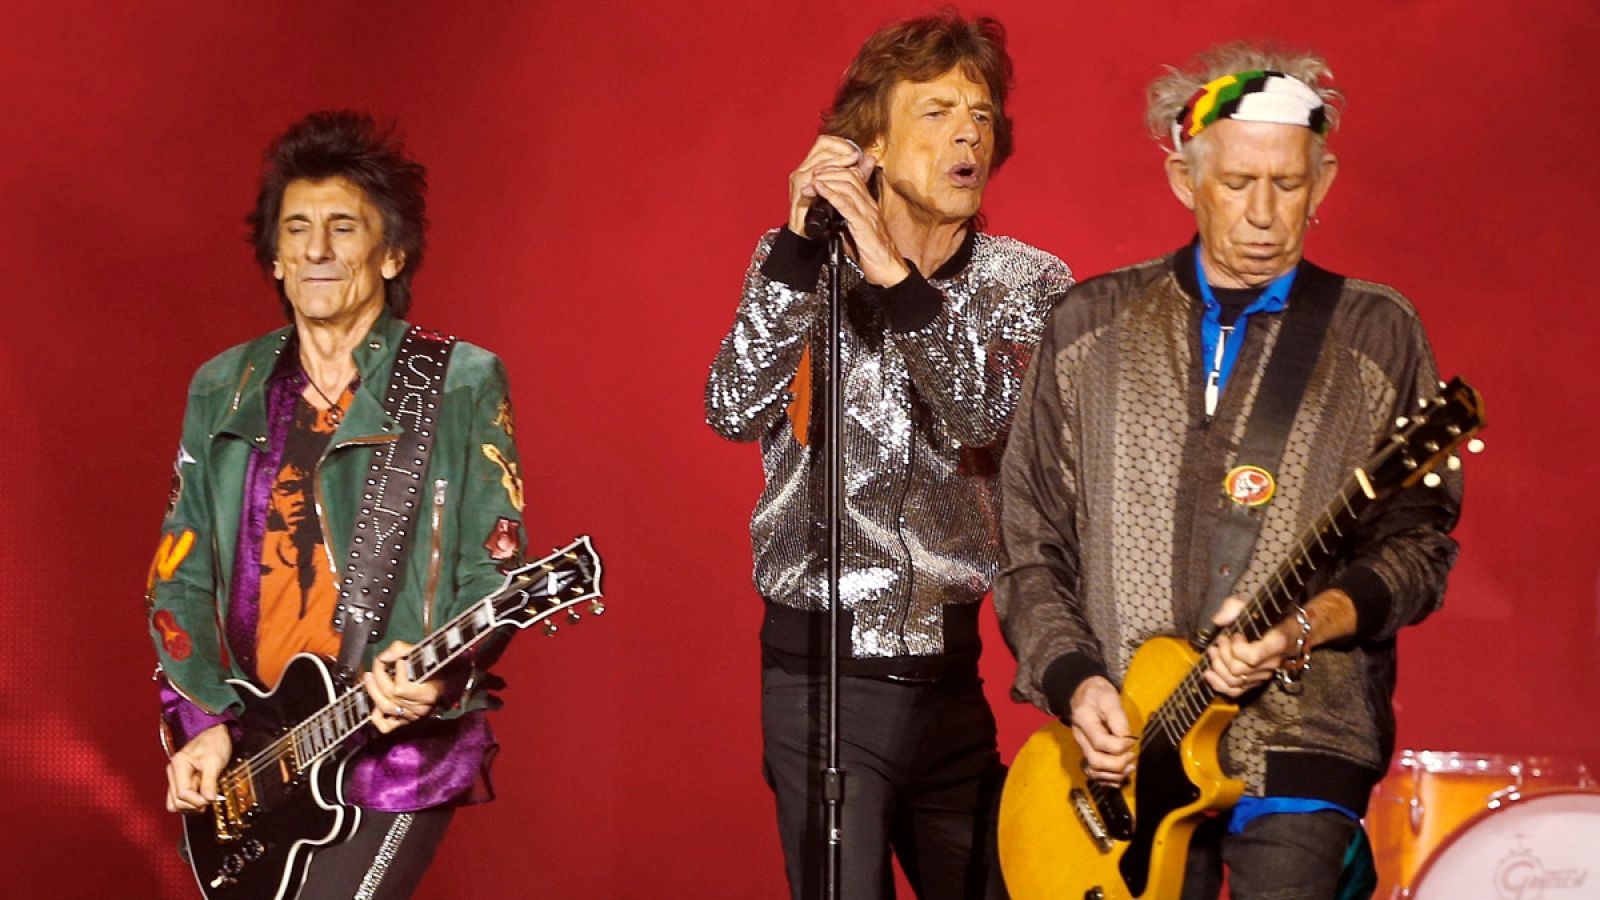 Ron Wood, Mick Jagger y Keith Richards durante un concierto de los Rolling Stones en Hamburgo en septiembre de 2017